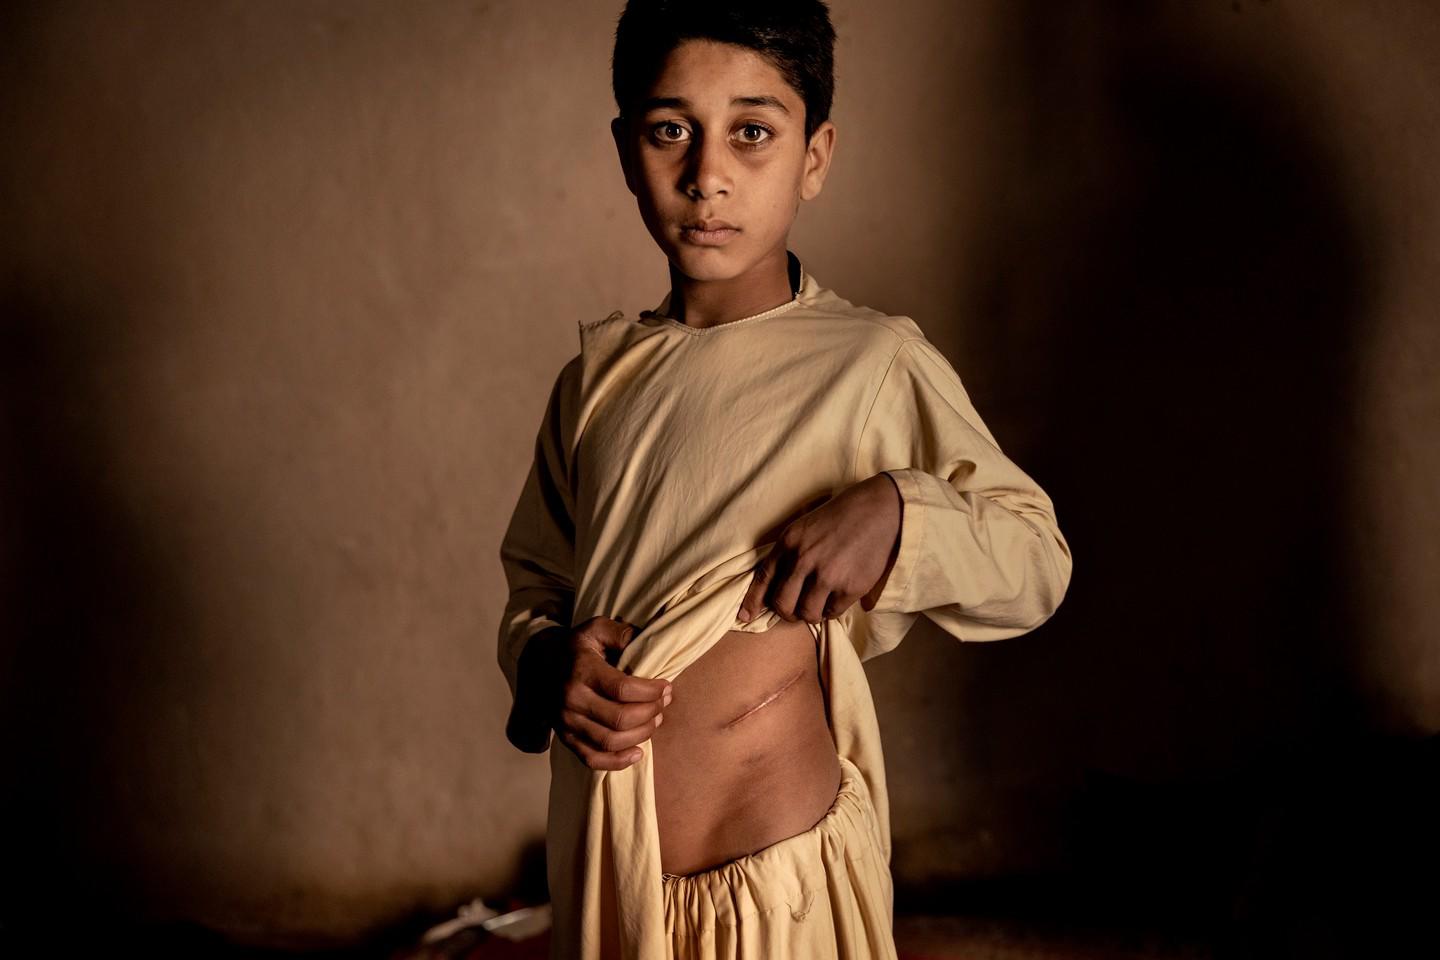 $!El precio de la paz en Afganistán del fotógrafo danés Mads Nissen para Politiken.